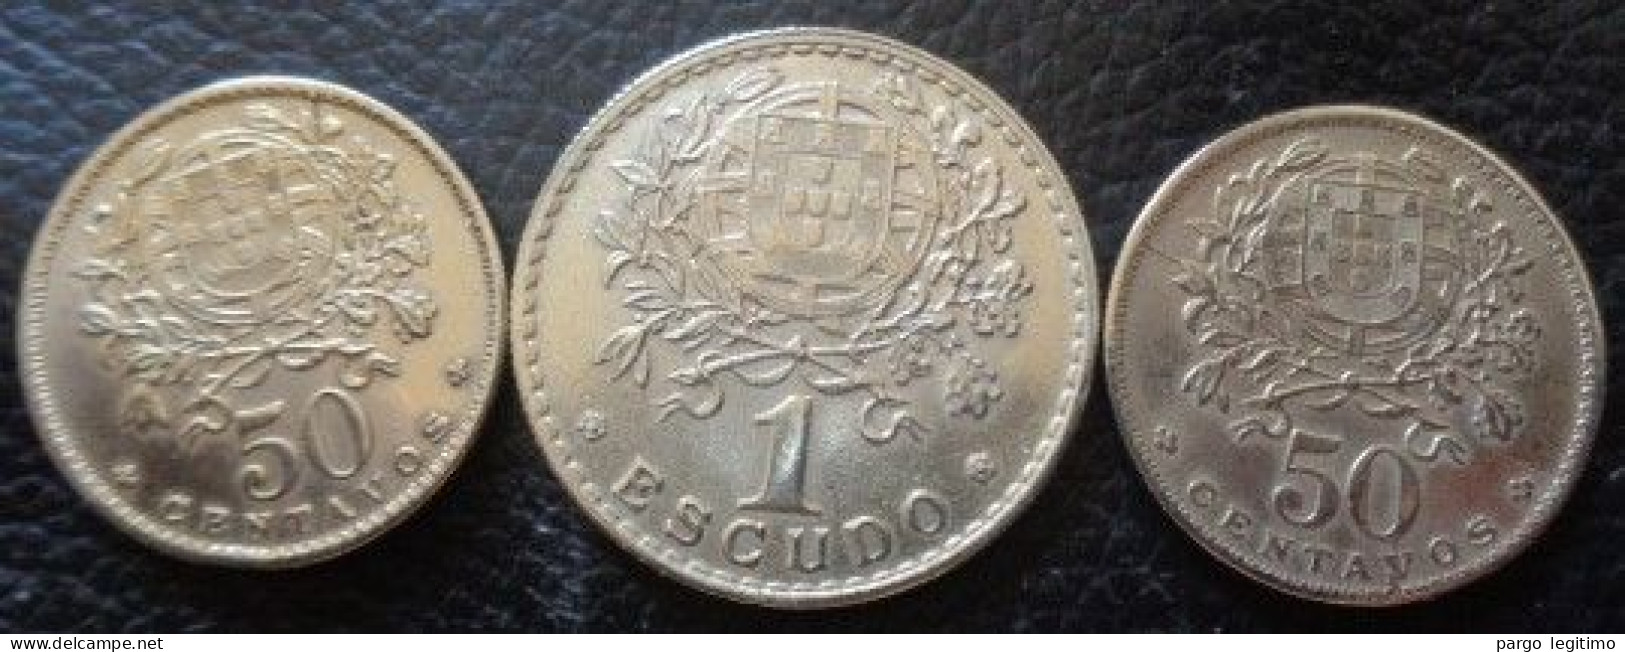 PORTUGAL 50 CENTAVOS 1927, 1929 & 1 ESCUDO 1944 FDC - Portogallo